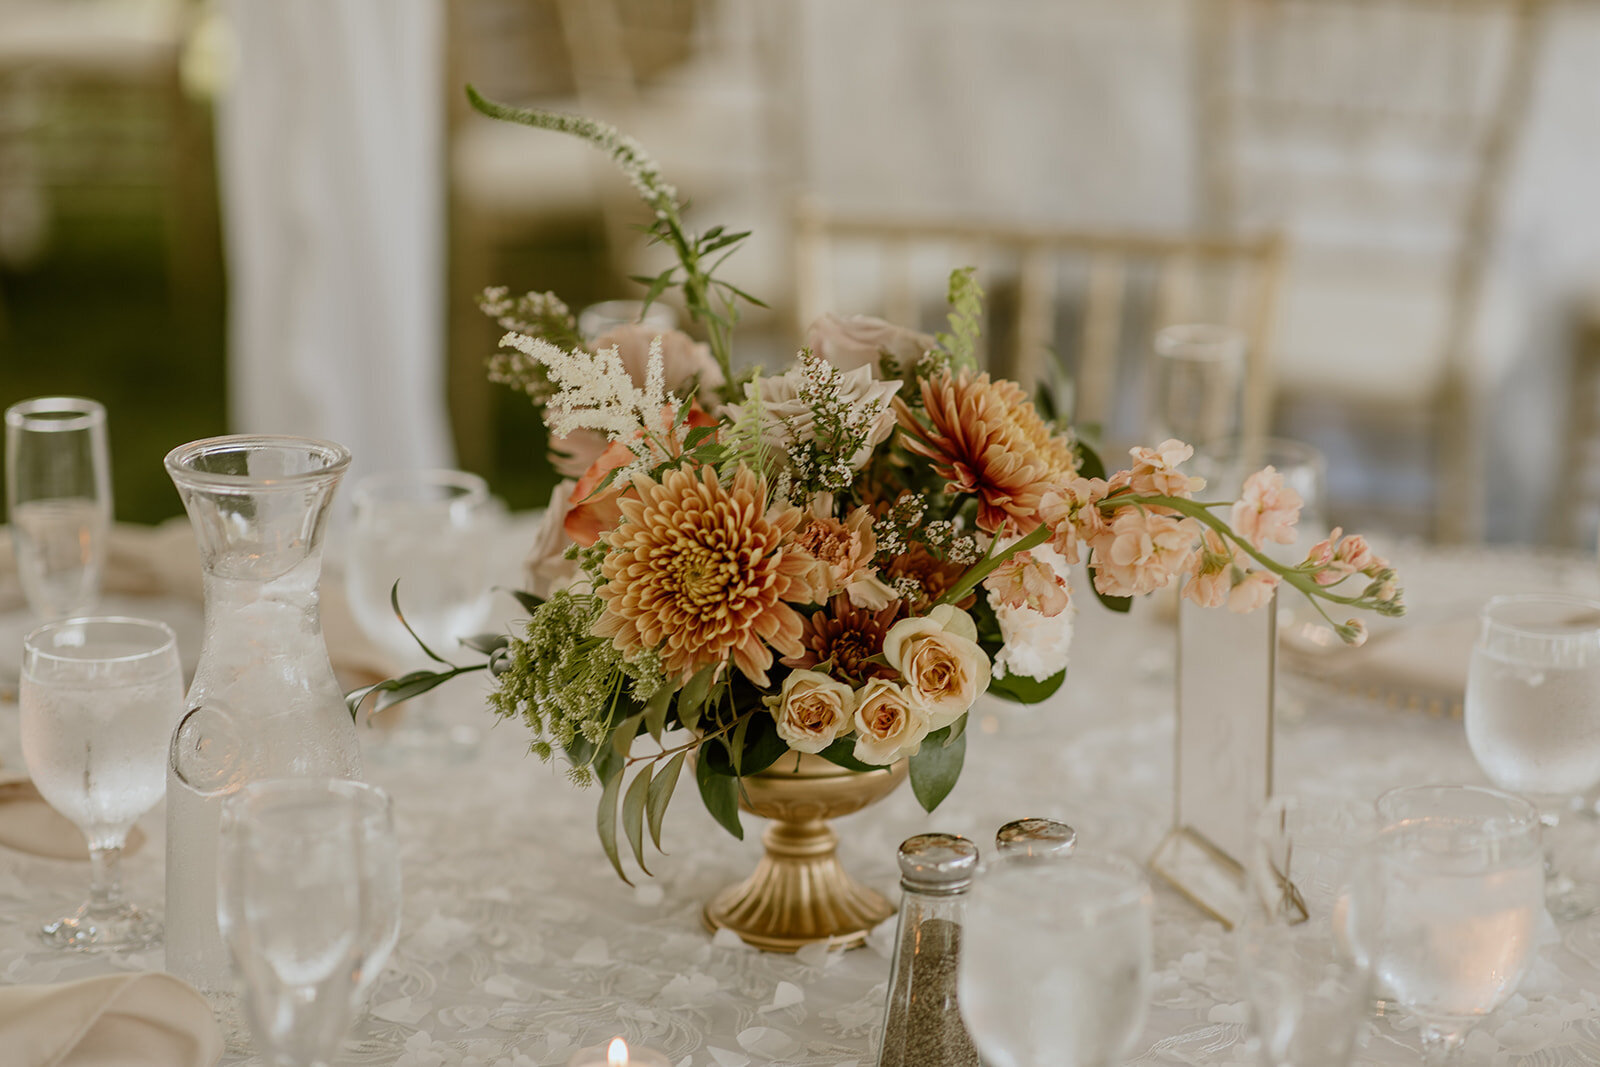 Luxury wedding flowers floral centerpiece